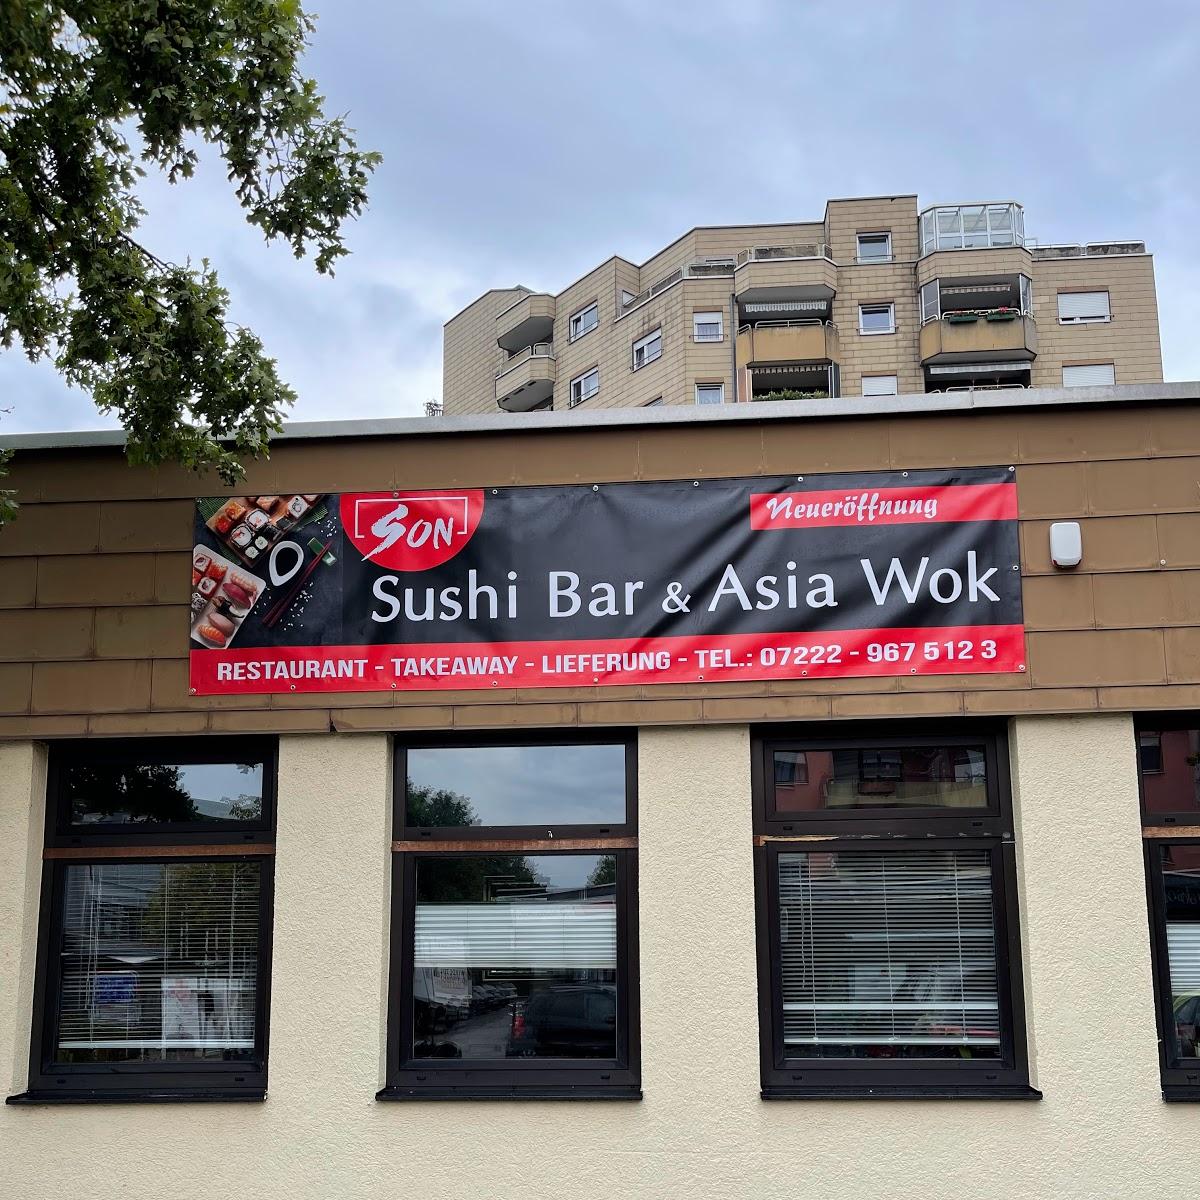 Restaurant "Son Sushi Bar & Asia Wok" in Rastatt